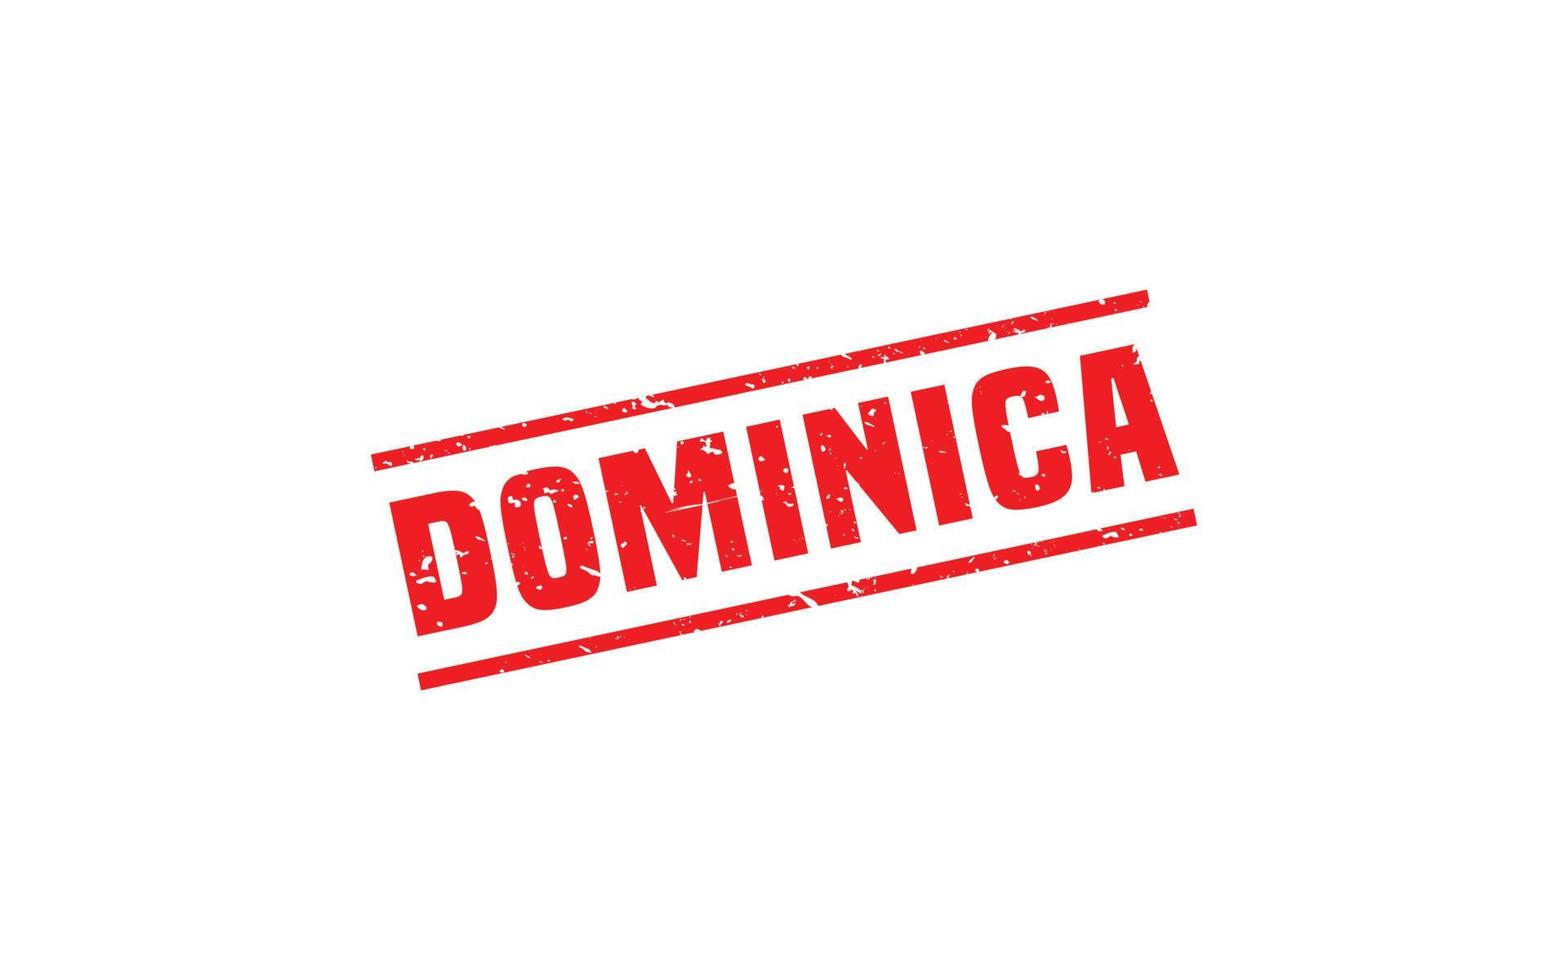 dominica postzegel rubber met grunge stijl Aan wit achtergrond vector